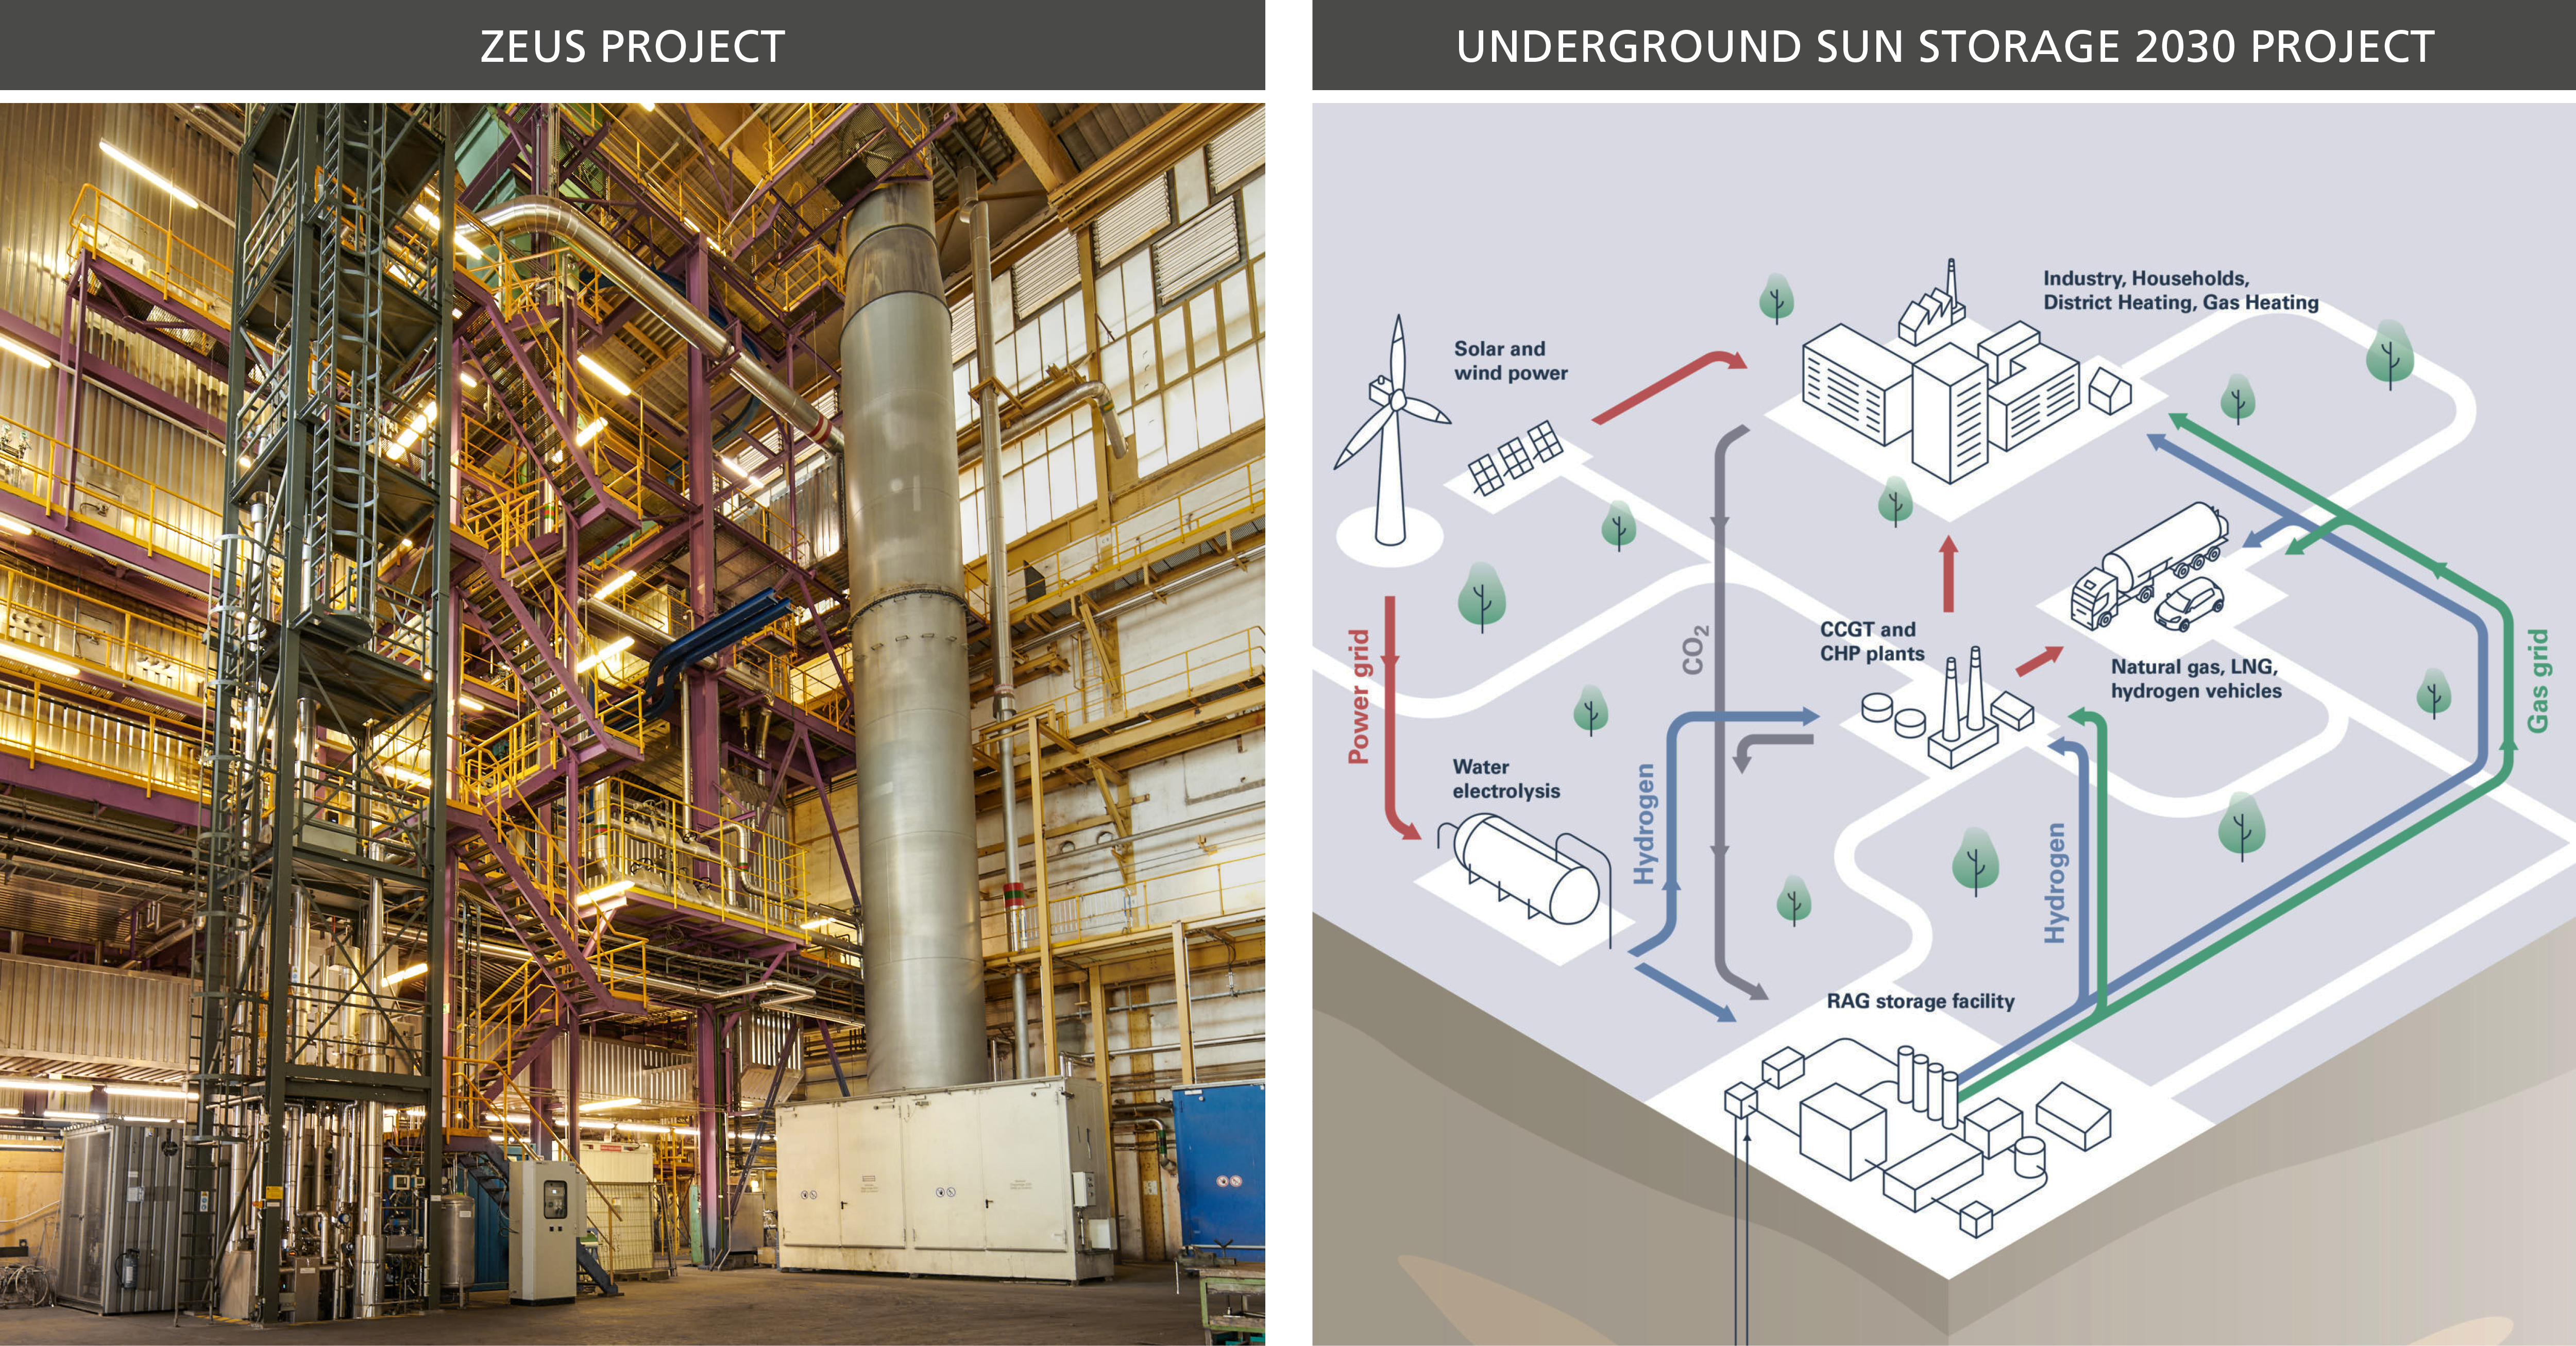 CO2 Abscheider im Projekt ZEUS, schematische Darstellung im Projekt USS2030 (Underground Sun Storage)